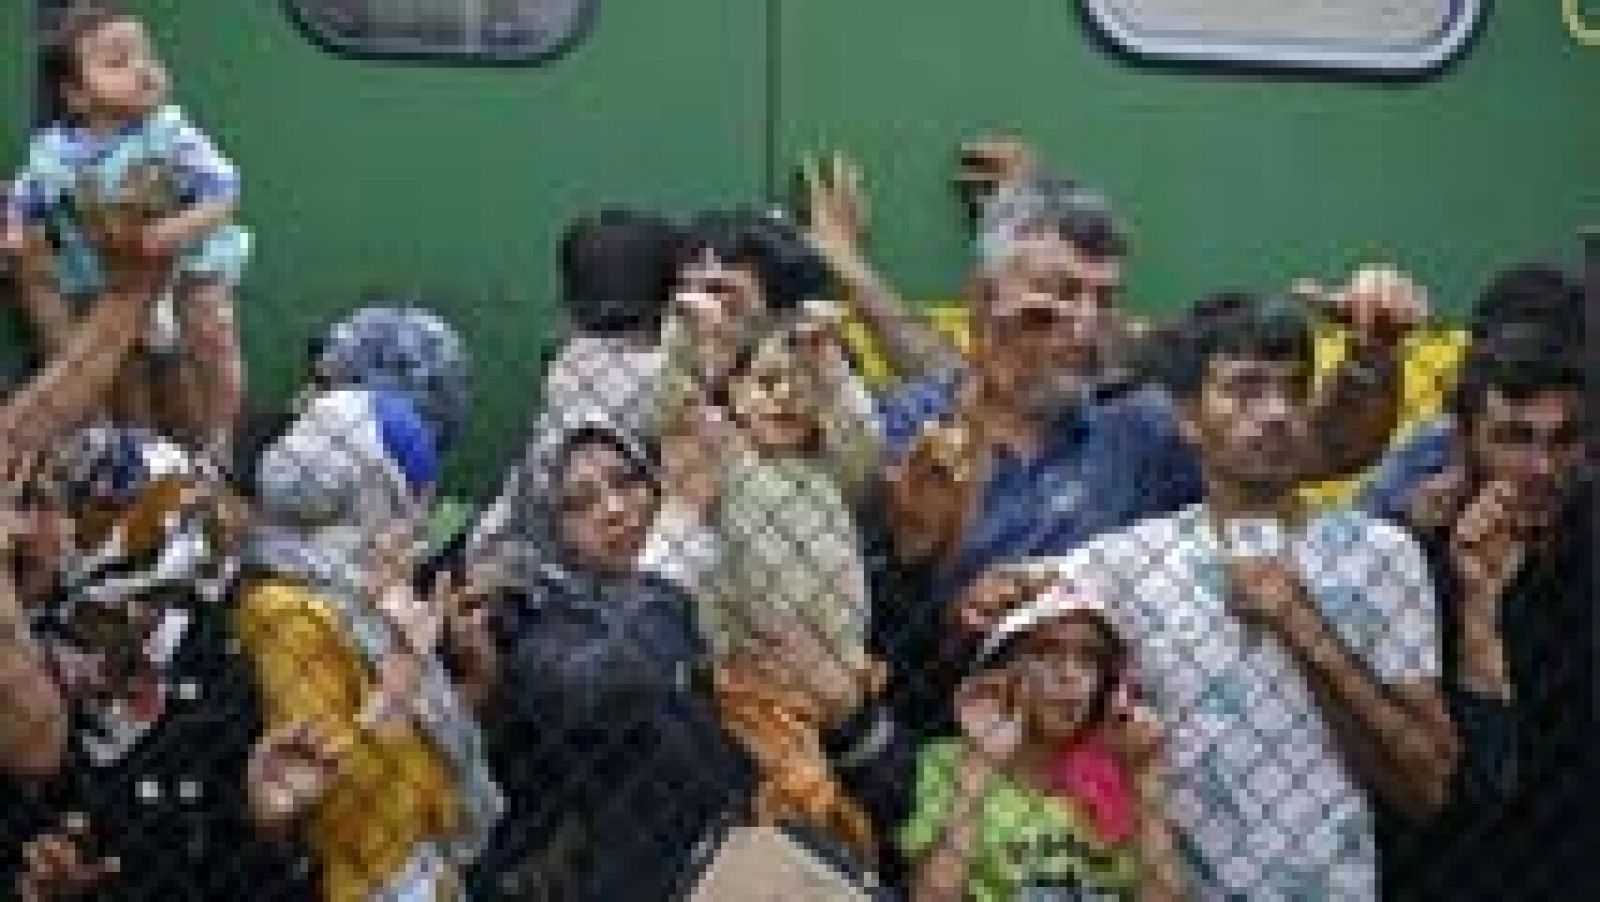 Los refugiados bajan del tren varado en la ciudad húngara de Bicske